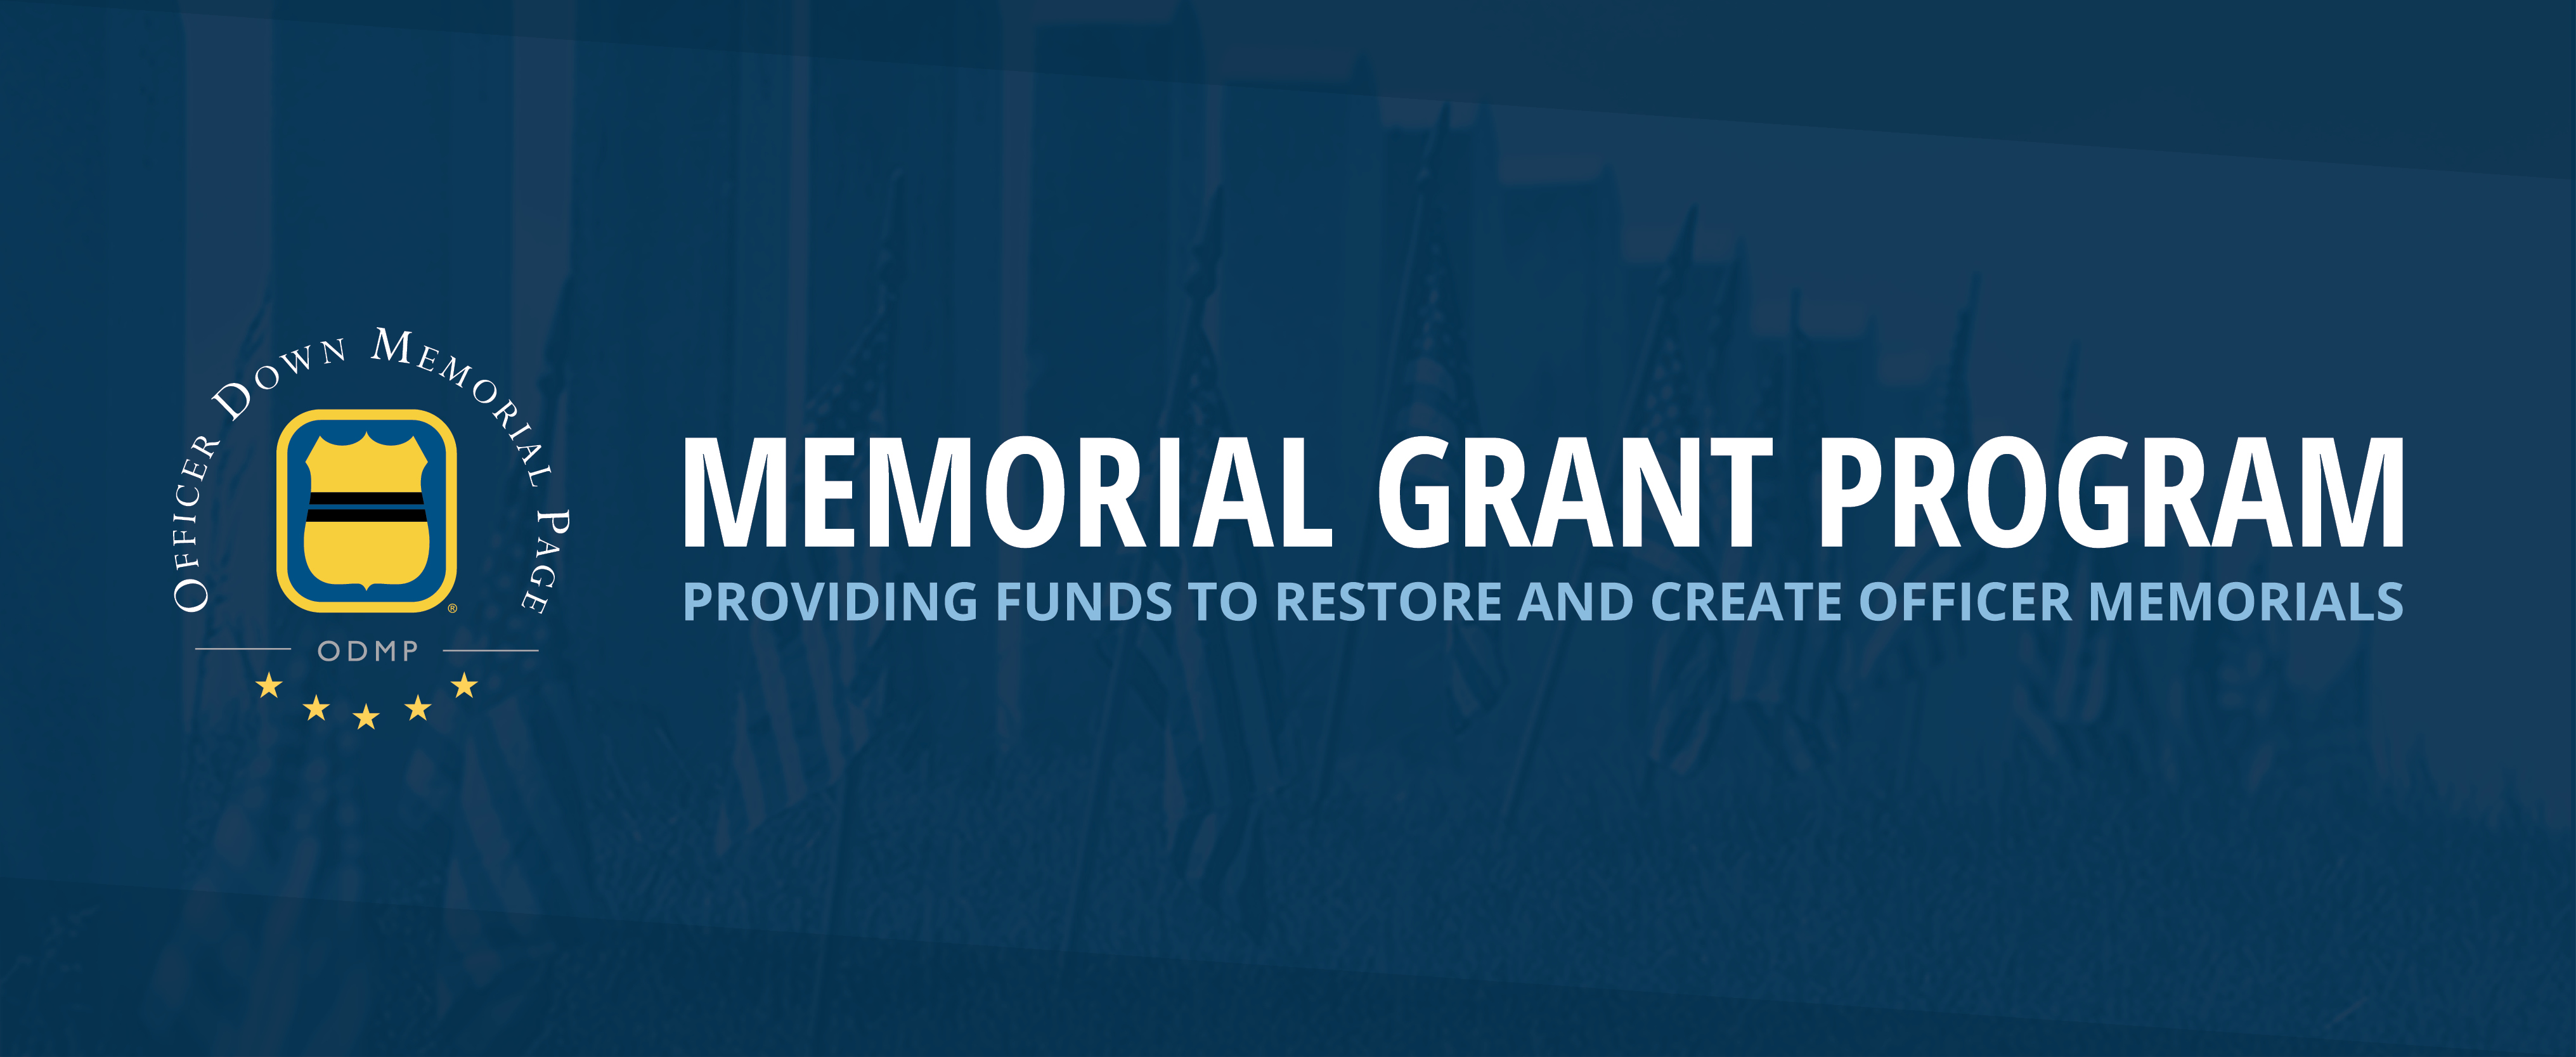 ODMP Memorial Grant